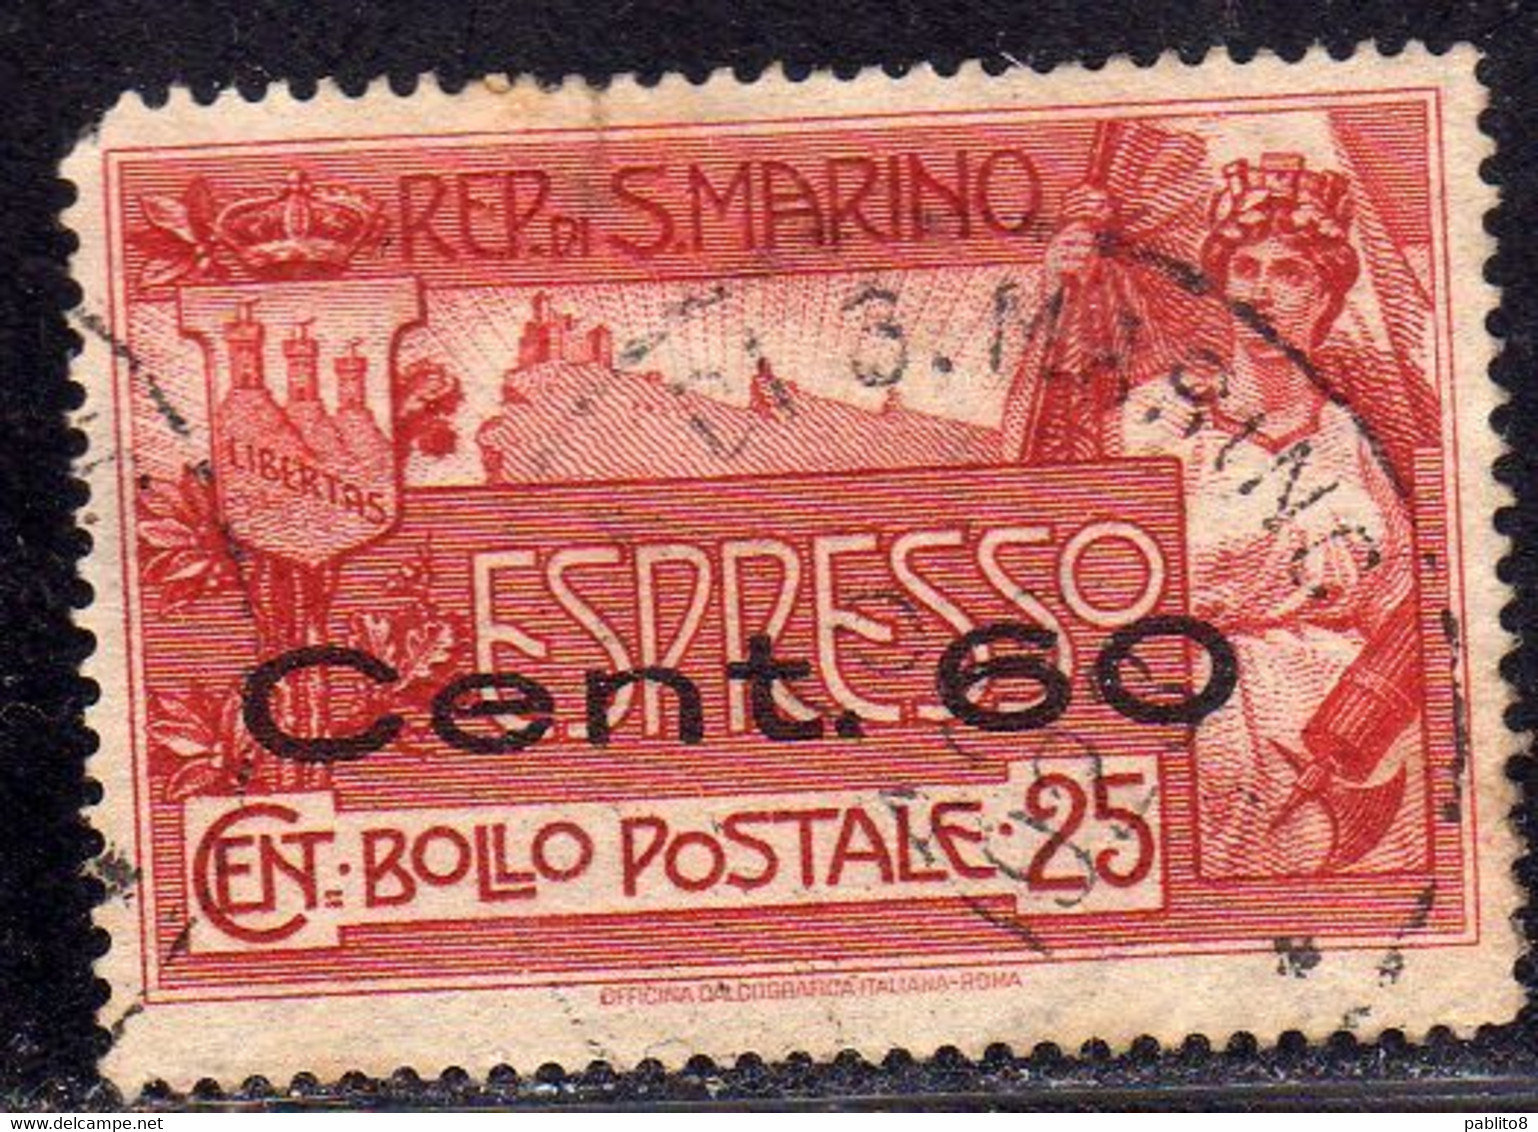 REPUBBLICA DI SAN MARINO 1923 ESPRESSO SPECIAL DELIVERY CENT. 60 SU 25c USATO USED OBLITERE' - Timbres Express